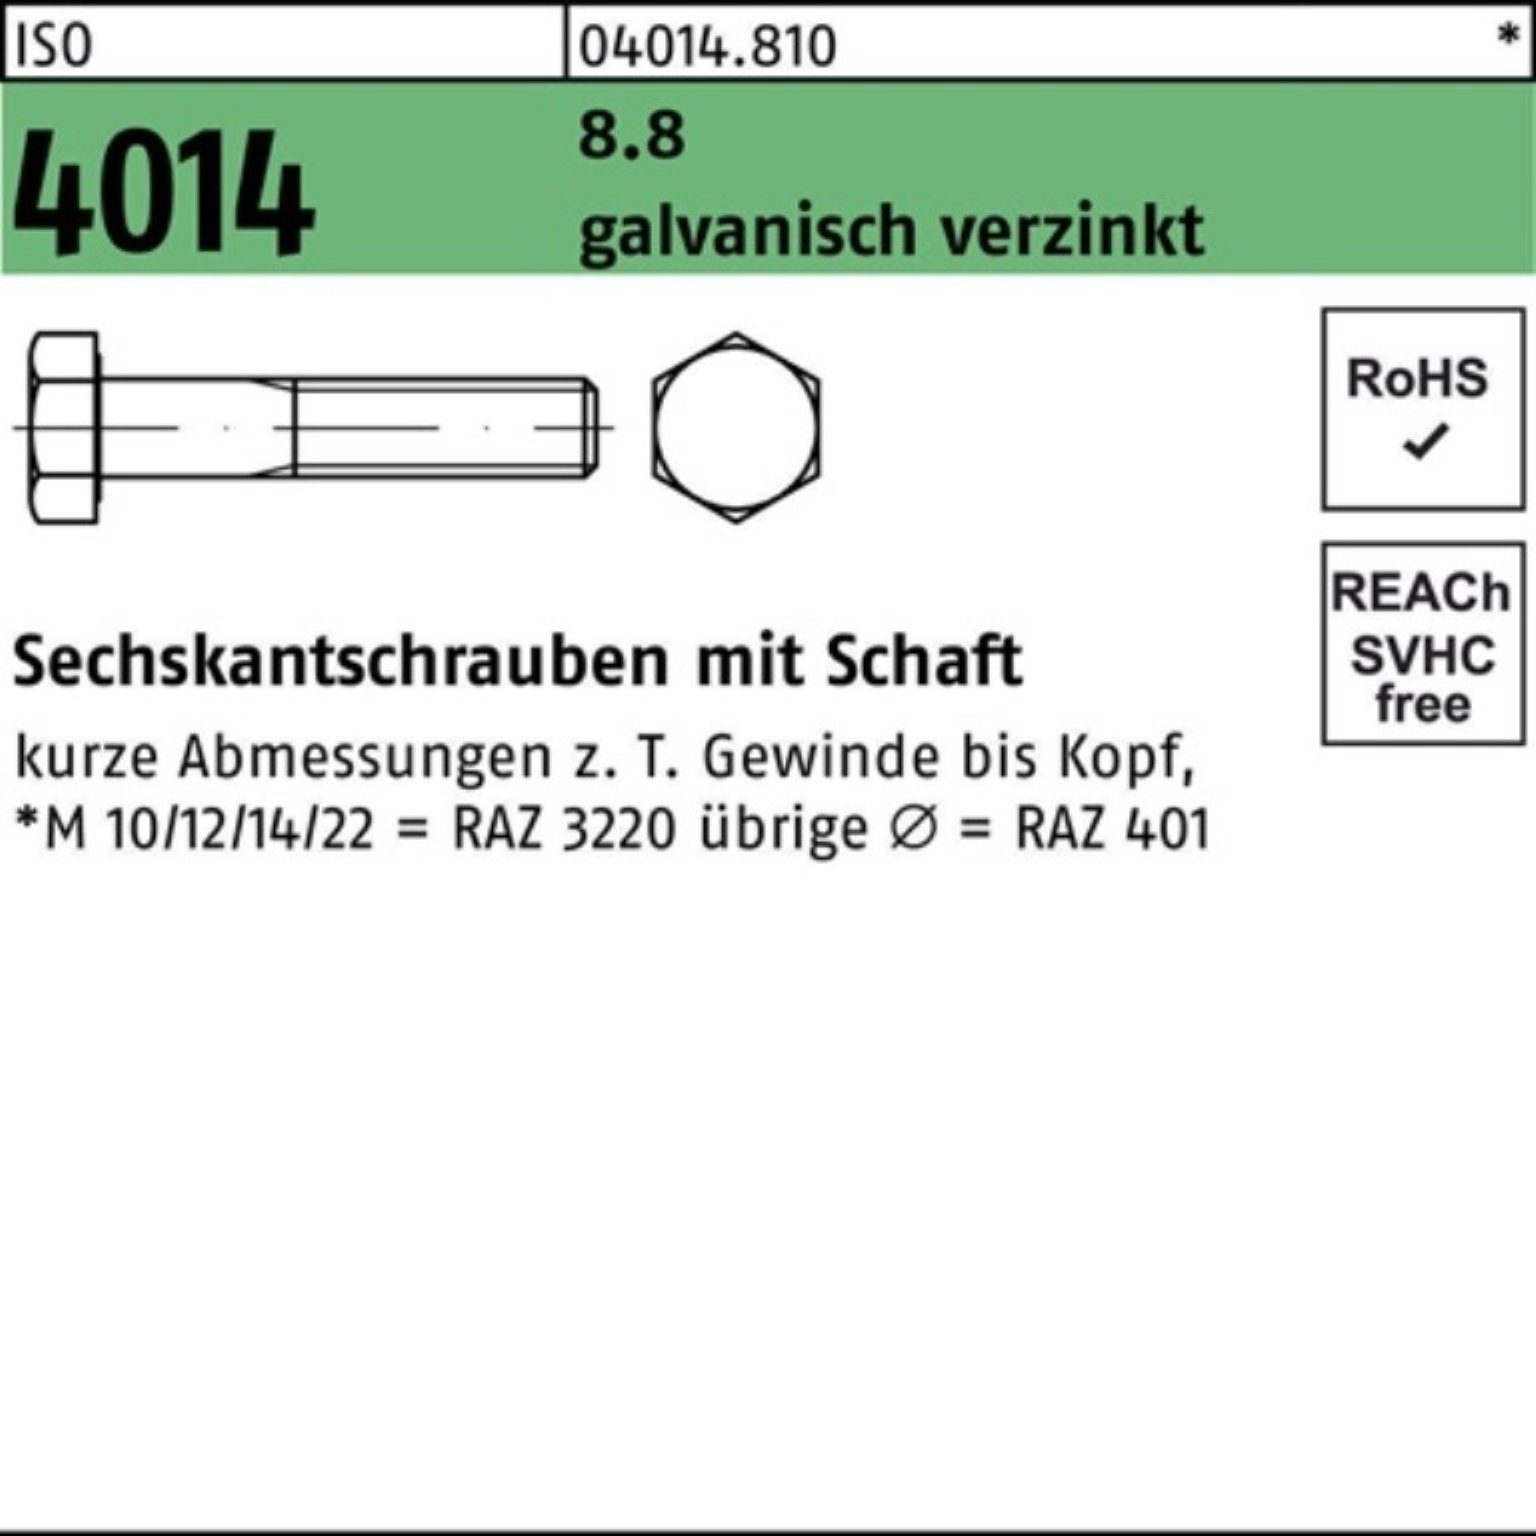 Pack Bufab Sechskantschraube 100er 8.8 galv.verz. Sechskantschraube Schaft 4014 115 5 M10x ISO